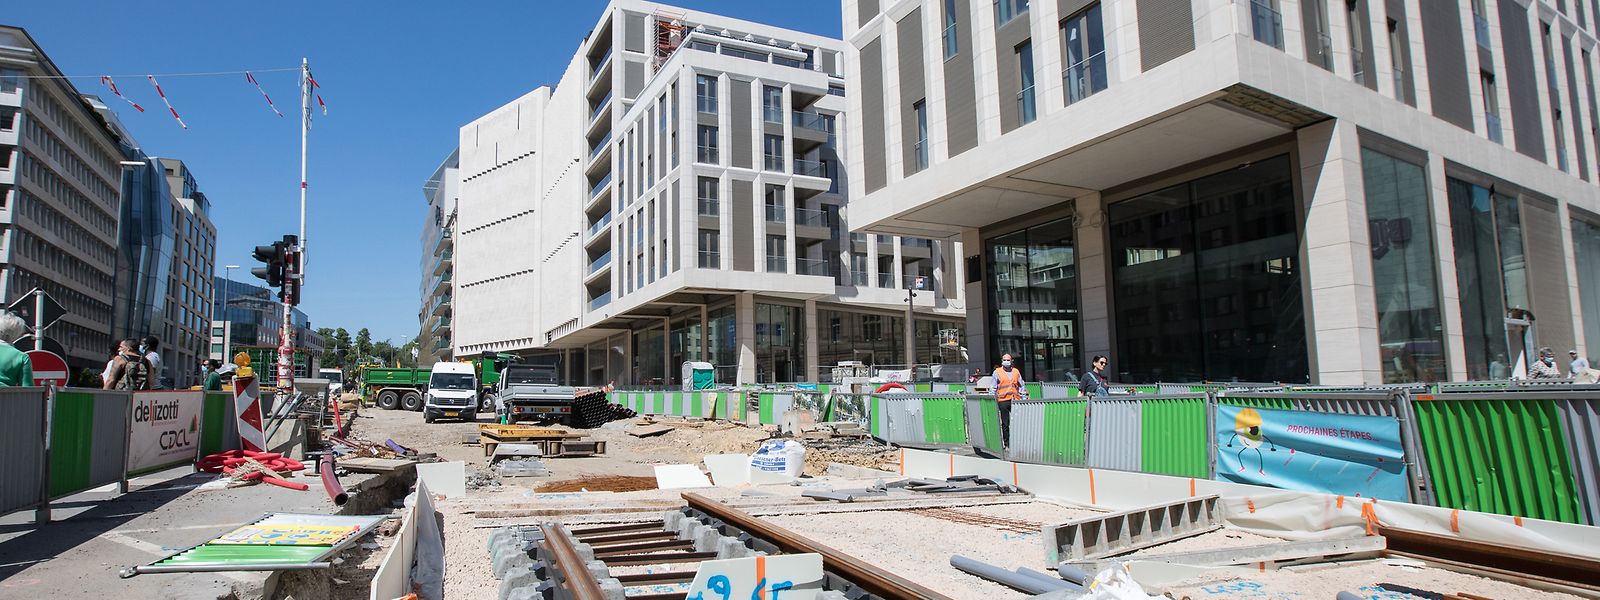 Parmi les projets phares de ce premier semestre 2020, l'immeuble Zenit à Hamilius a su attirer les investisseurs.